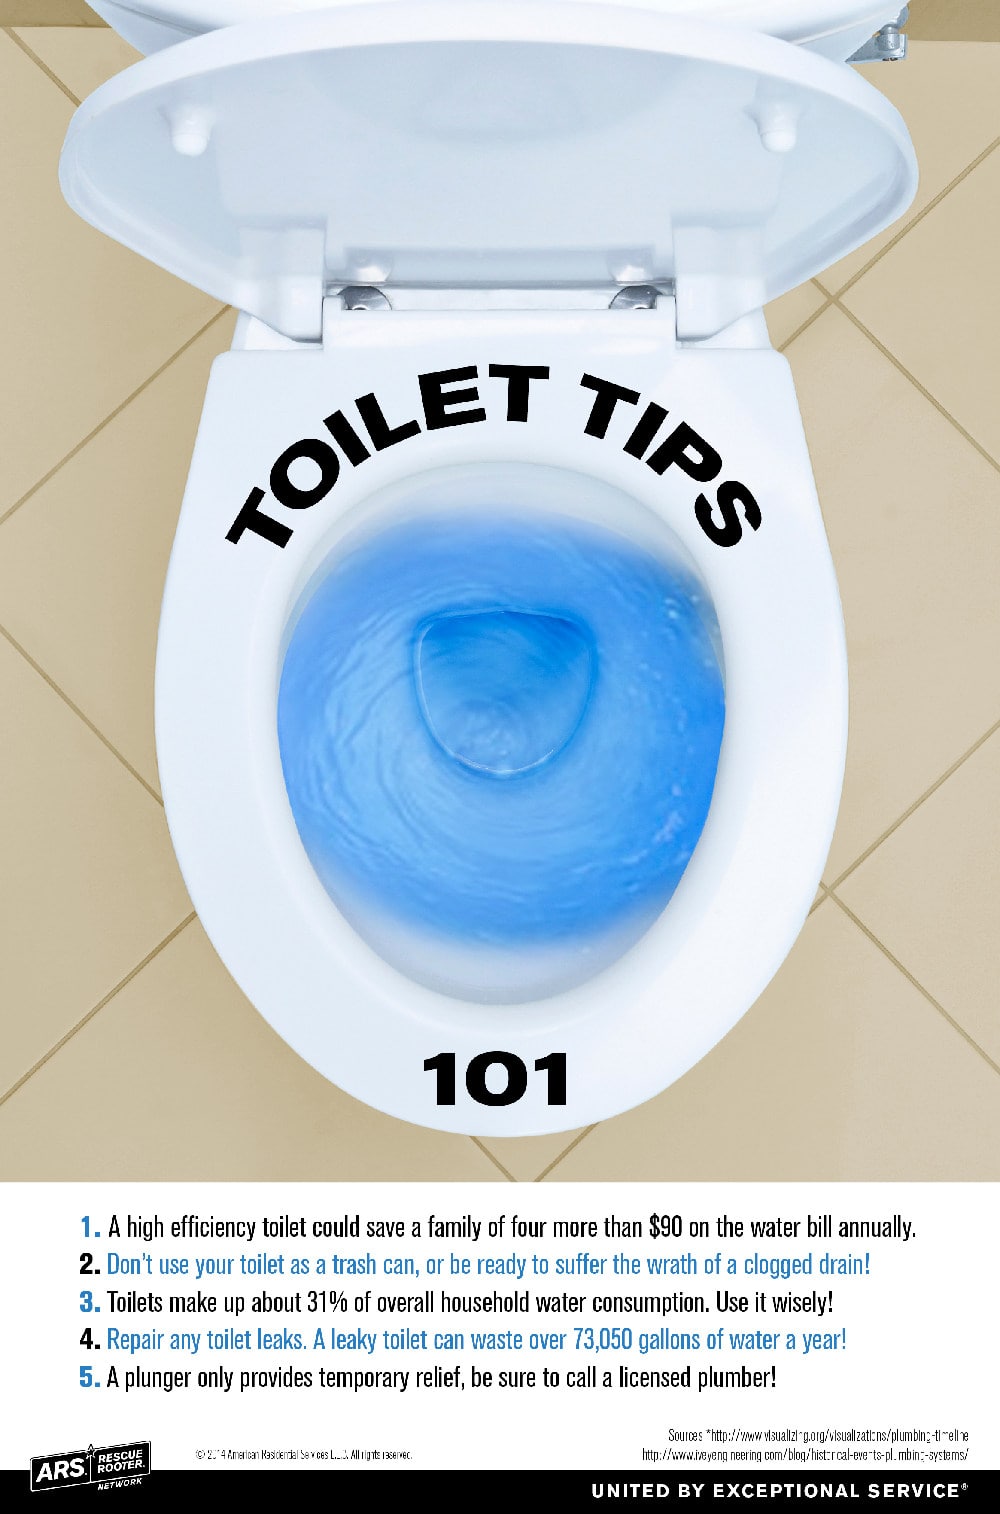 toilet tips.